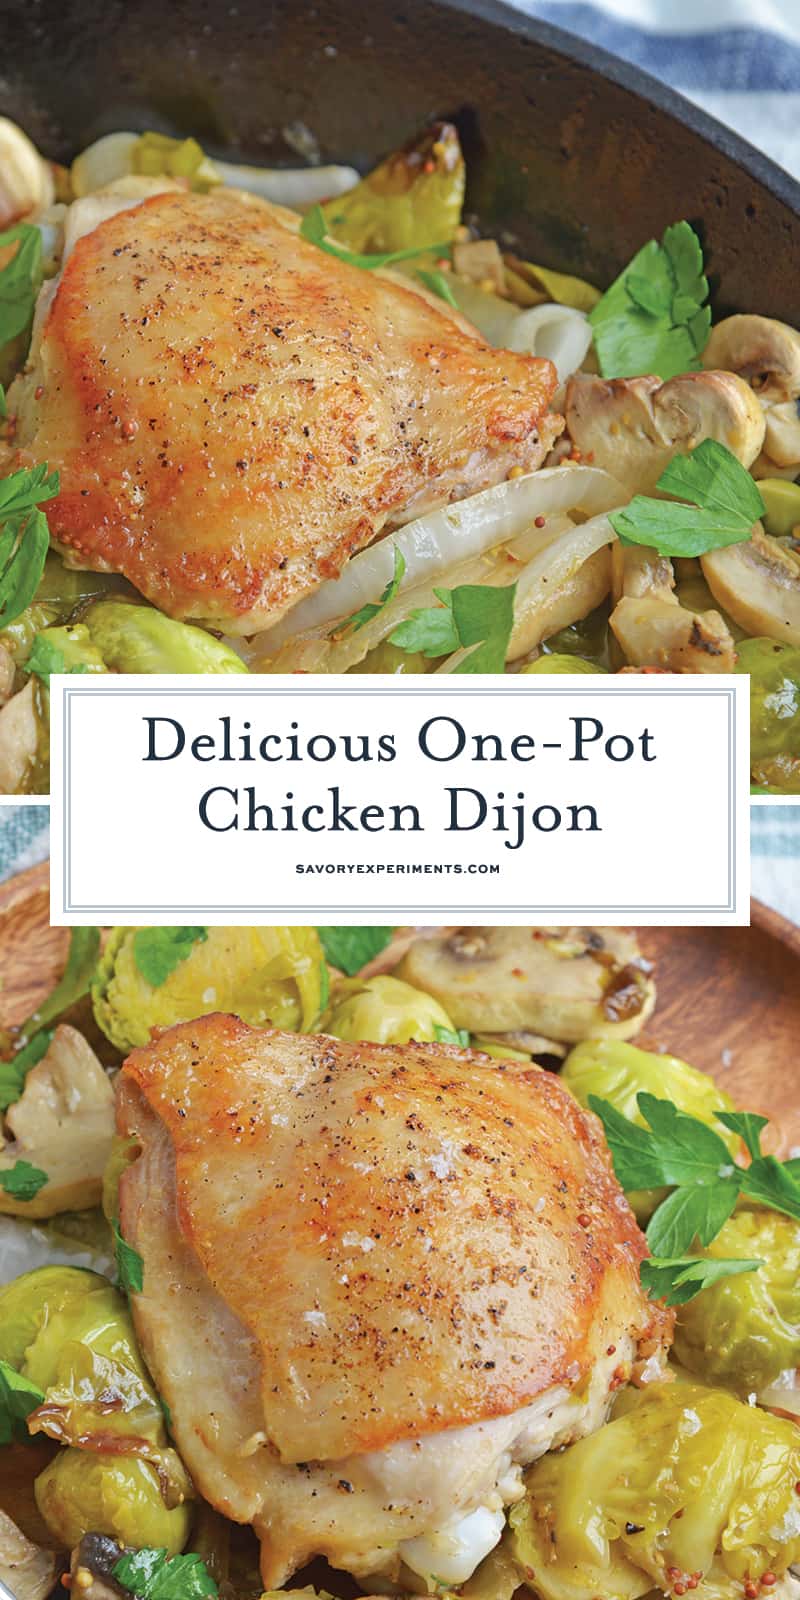 Chicken Dijon - A Easy Dijon Mustard Chicken Recipe